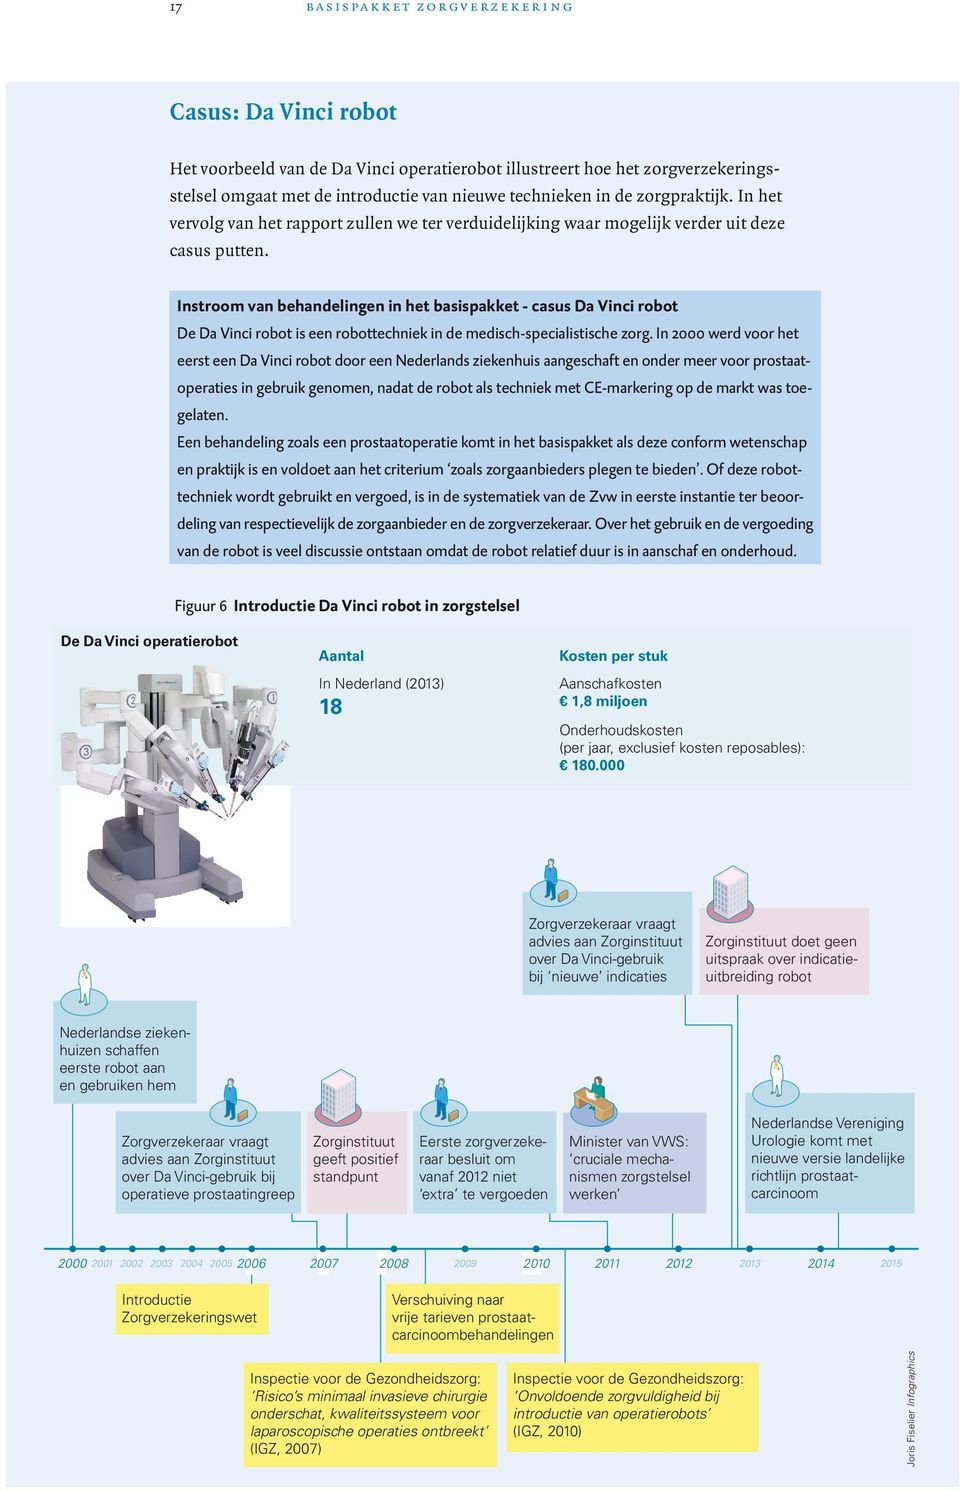 Instroom van behandelingen in het basispakket - casus Da Vinci robot De Da Vinci robot is een robottechniek in de medisch-specialistische zorg.